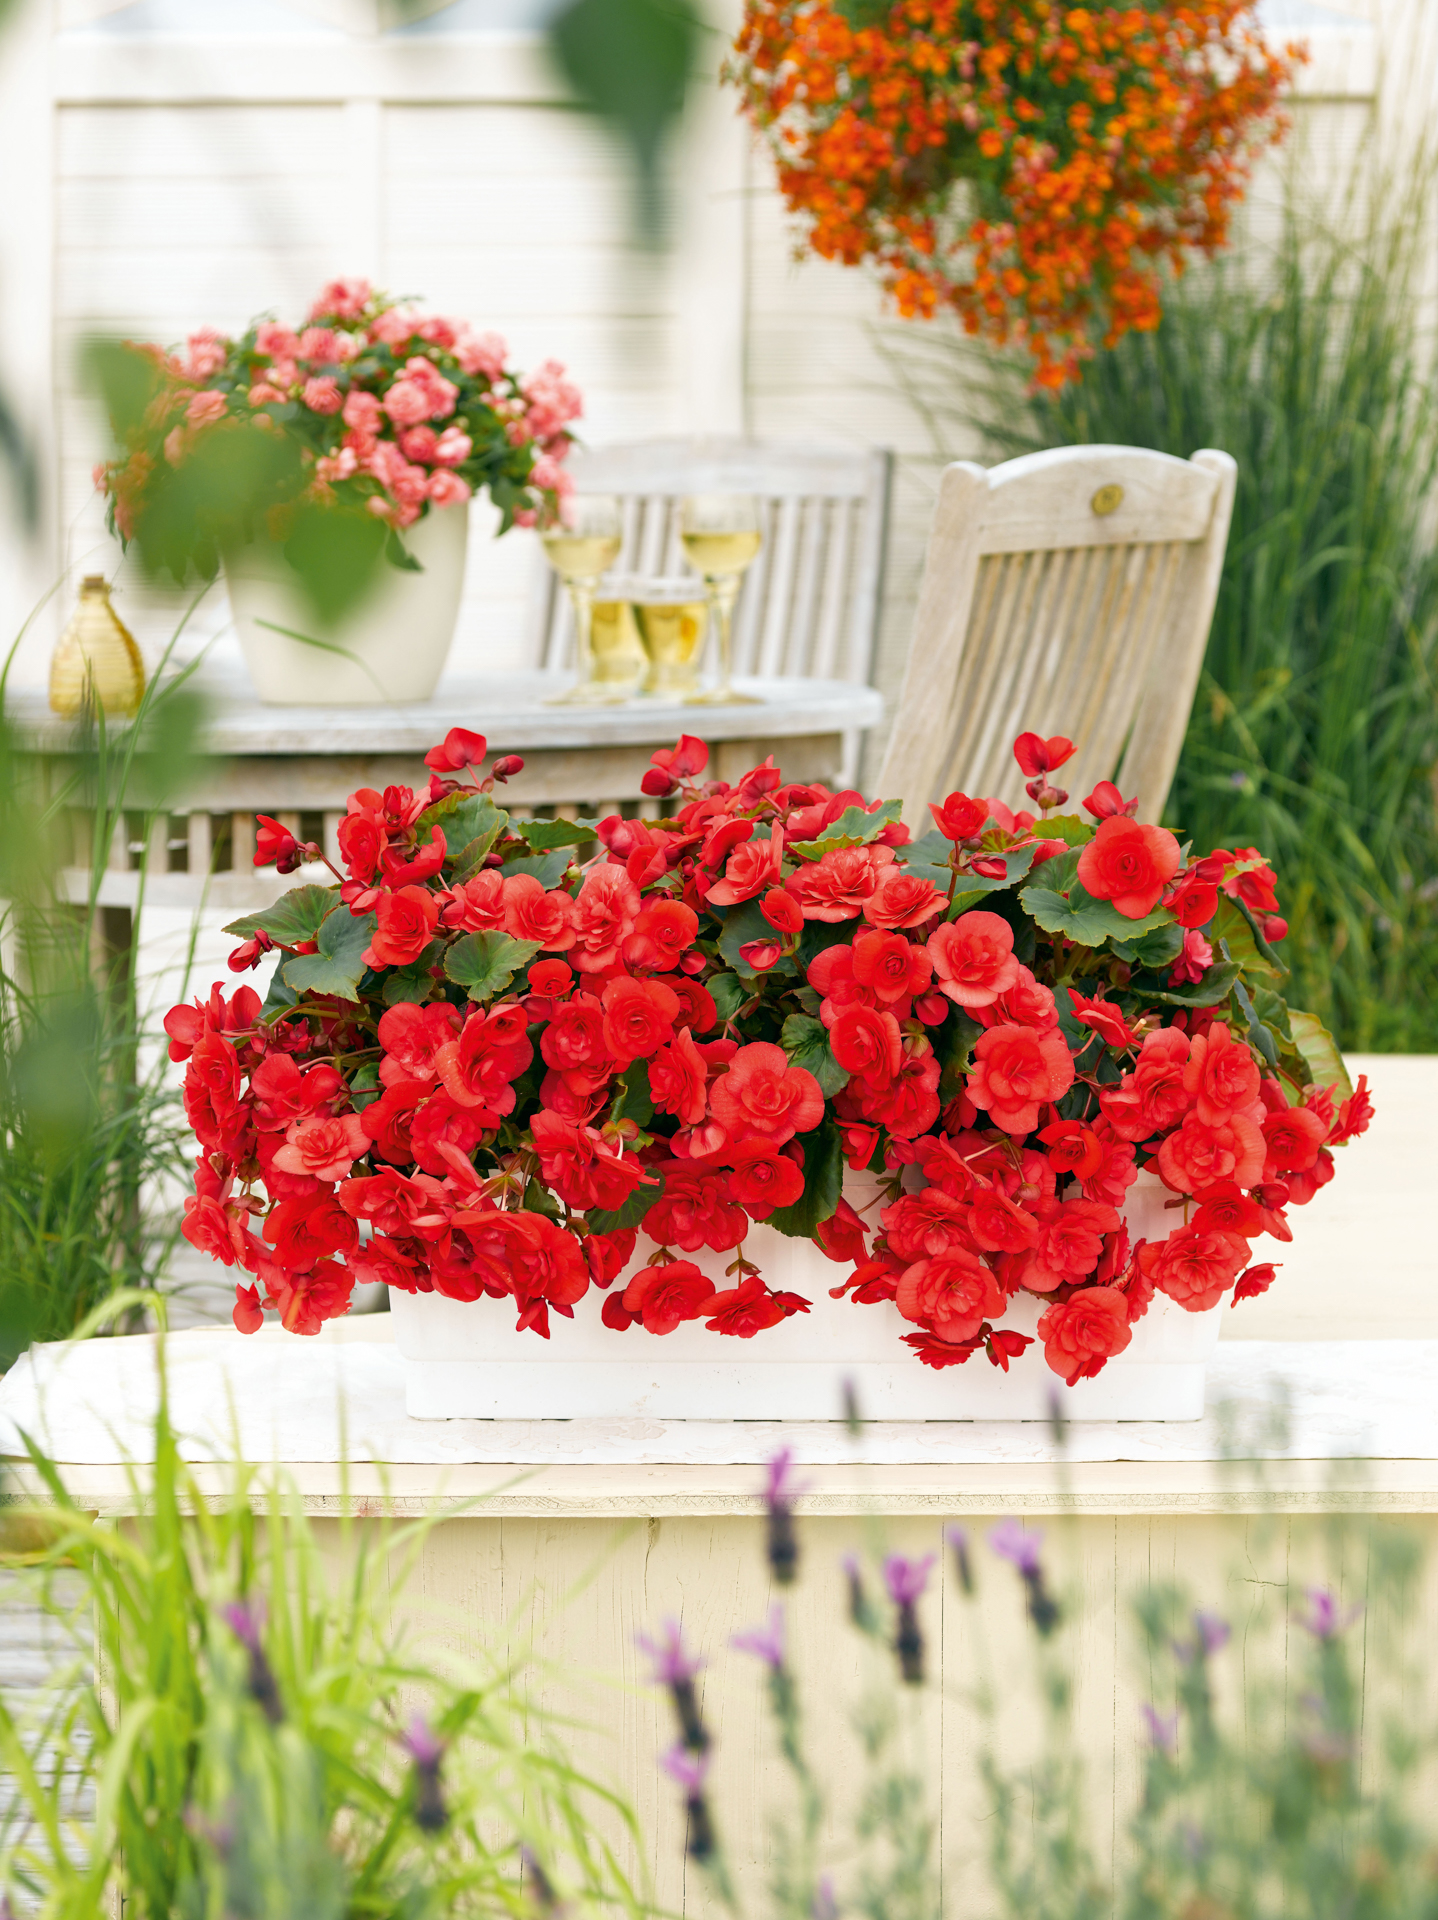 
                        Begonia
             
                        elatior
             
                        Solenia®
             
                        Red
            